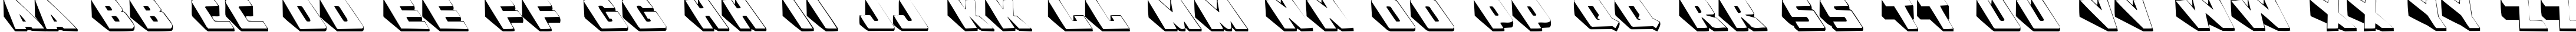 Пример написания английского алфавита шрифтом Wedgie Regular